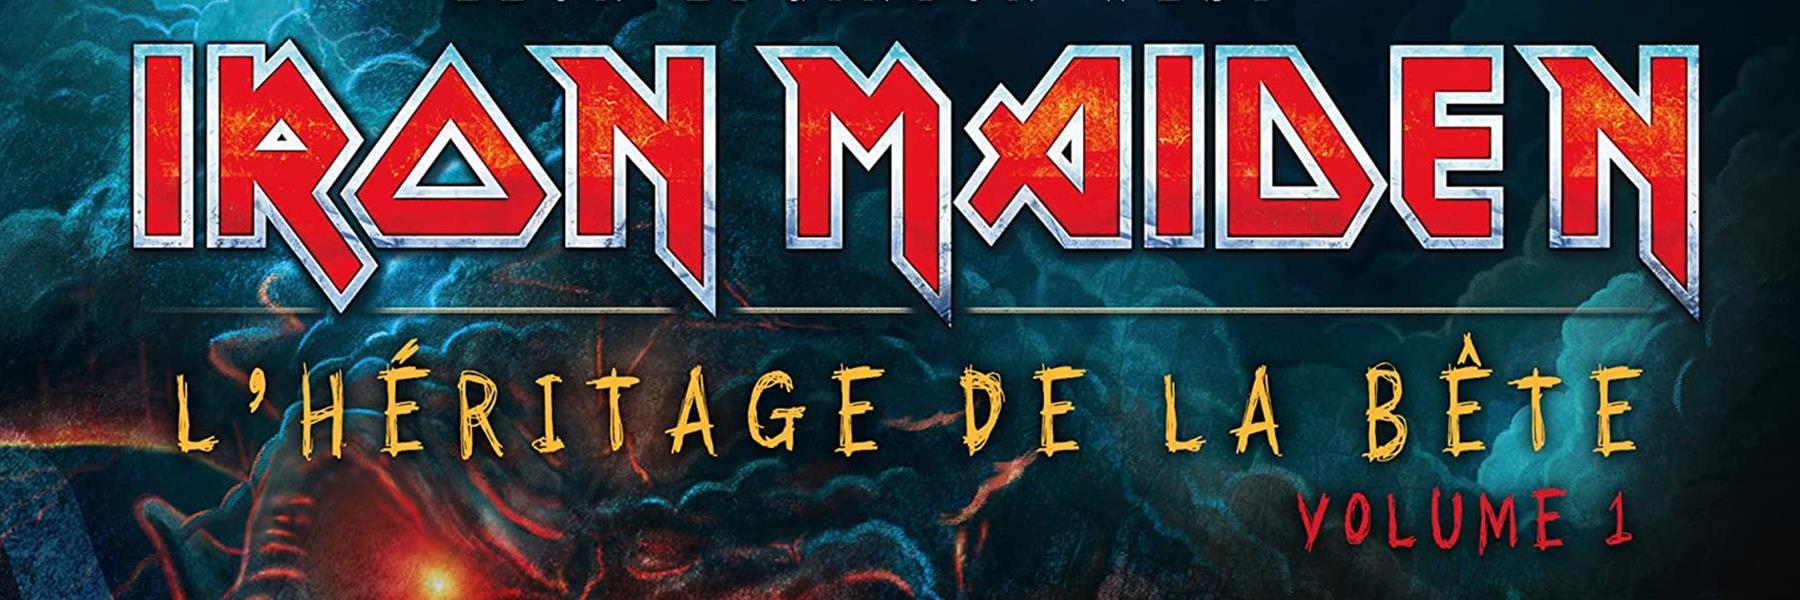 Iron Maiden : Le premier tome de la BD officielle, et en Français !